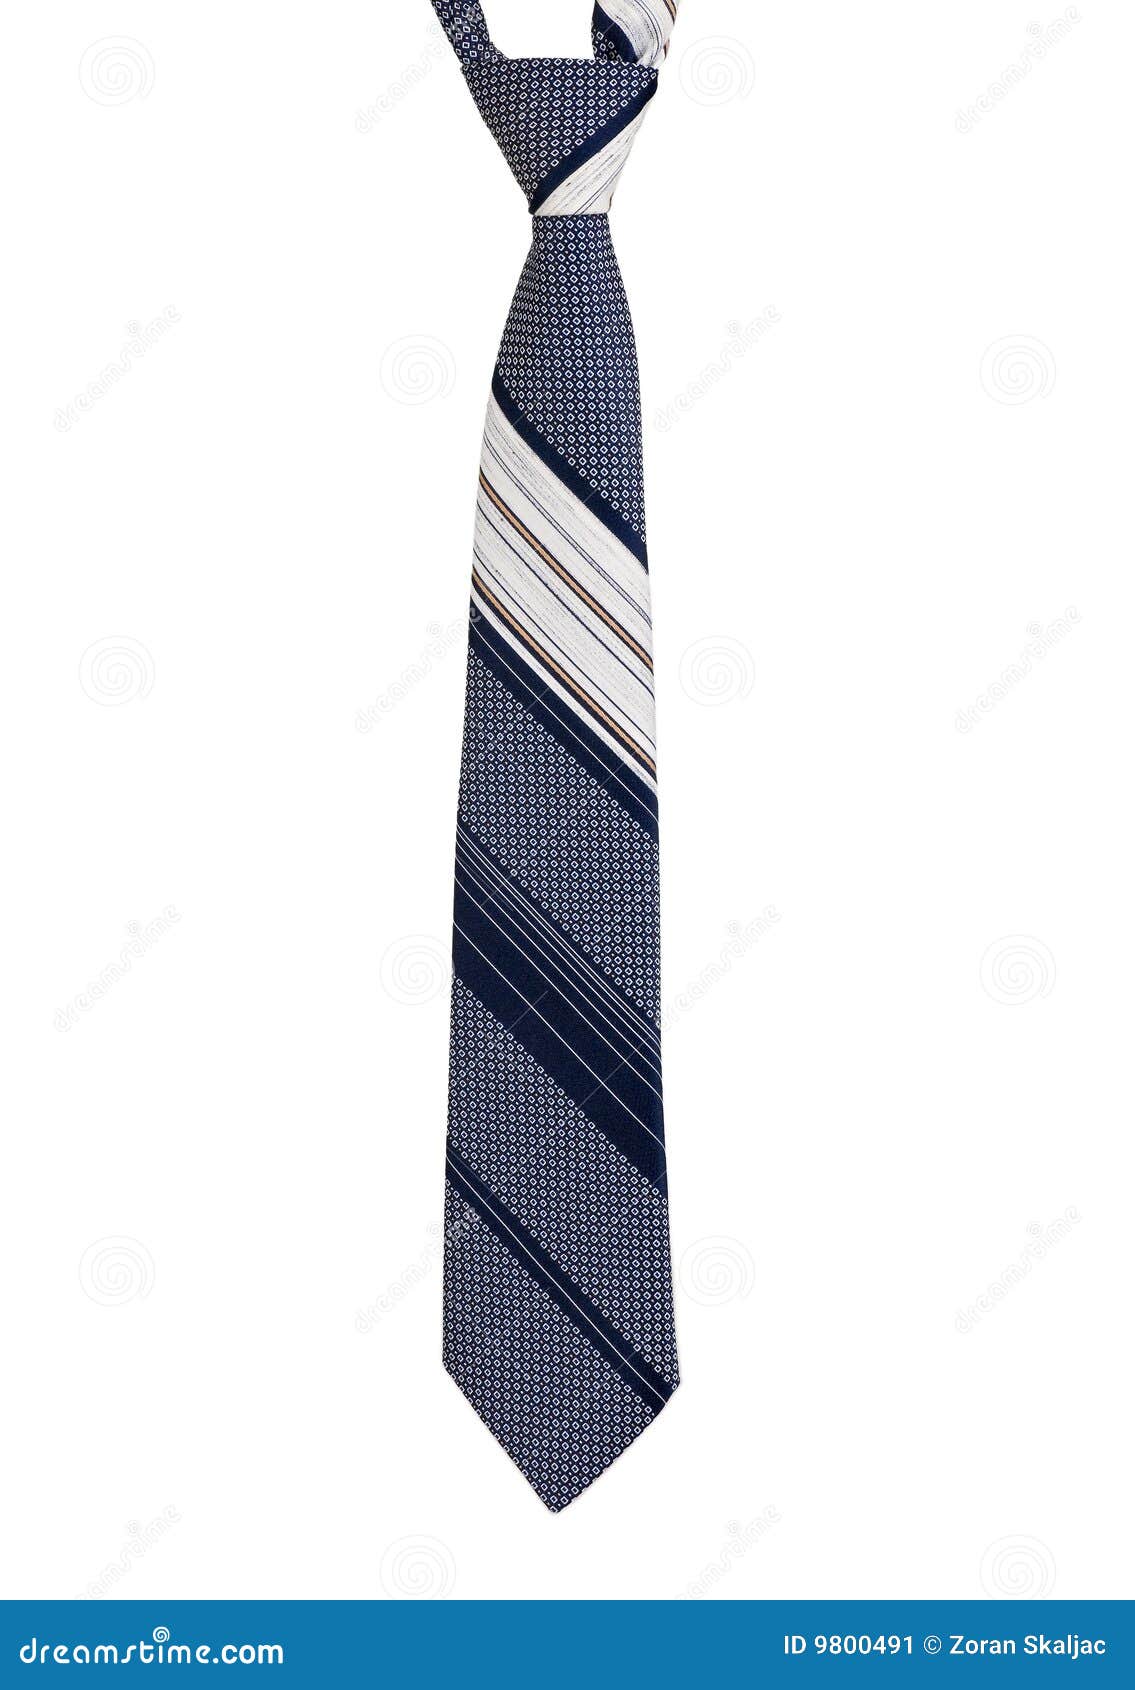 Necktie stock image. Image of clothing, fabric, fashionable - 9800491